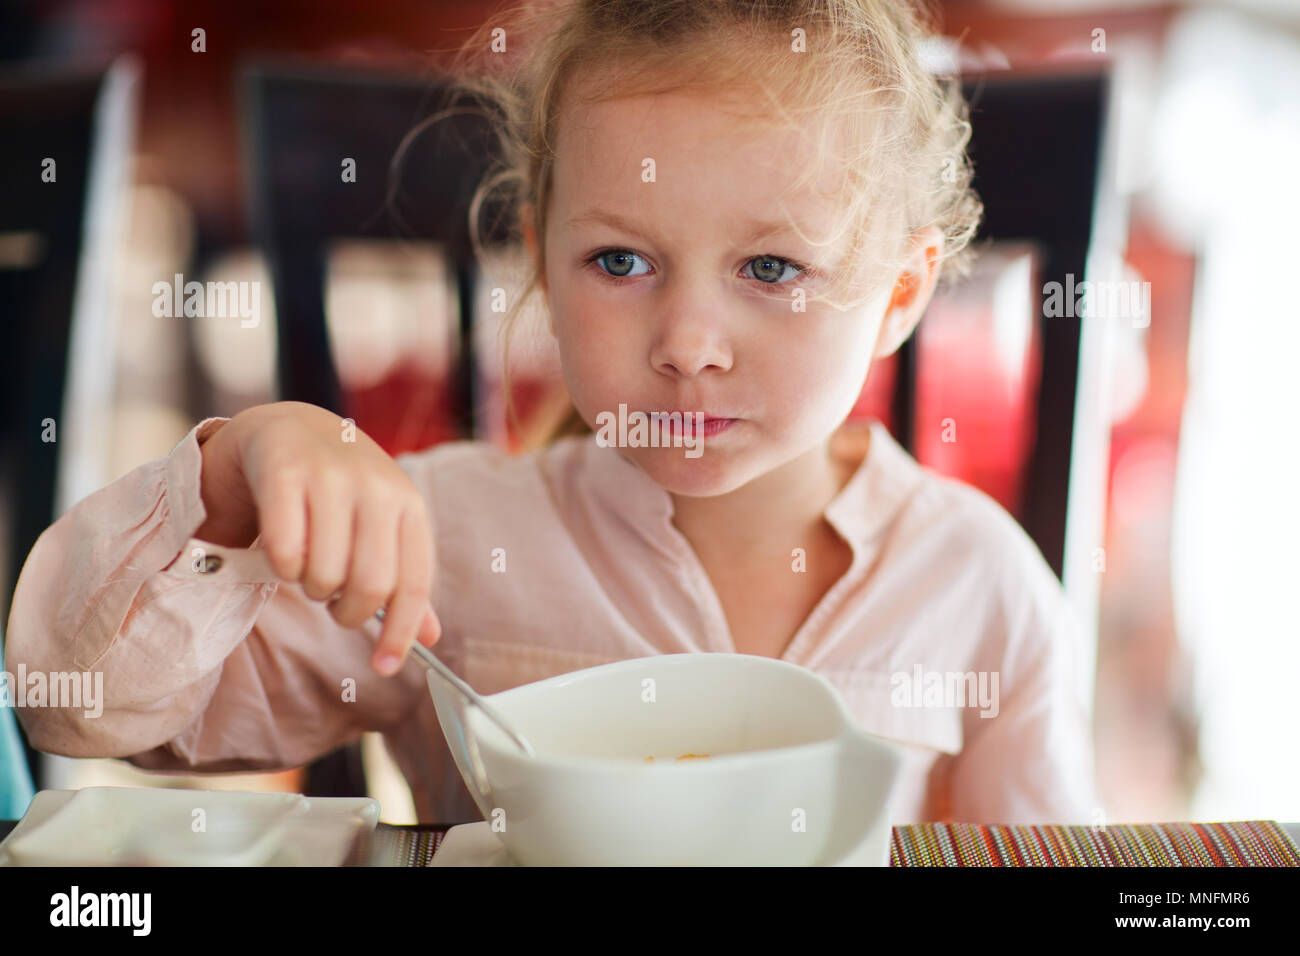 Adorable little girl eating breakfast in restaurant Stock Photo